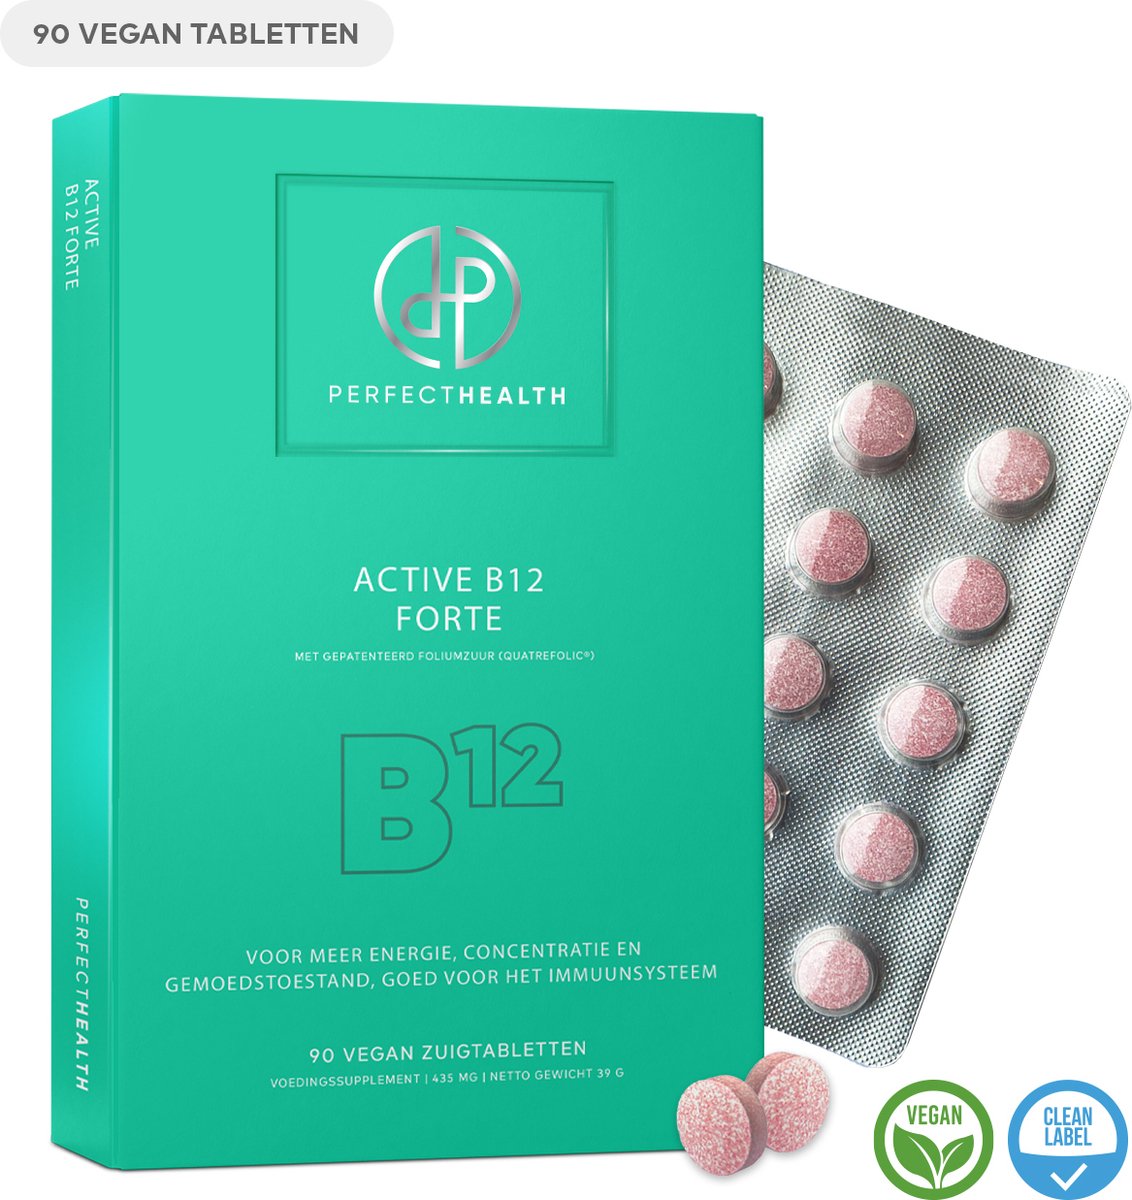 Perfect Health - Active B12 Forte - Energie, concentratie en immuunsysteem – Vitamine B12 - 1000mcg methylcobalamine - Hoog gedoseerd – 90 Vegan zuigtabletten